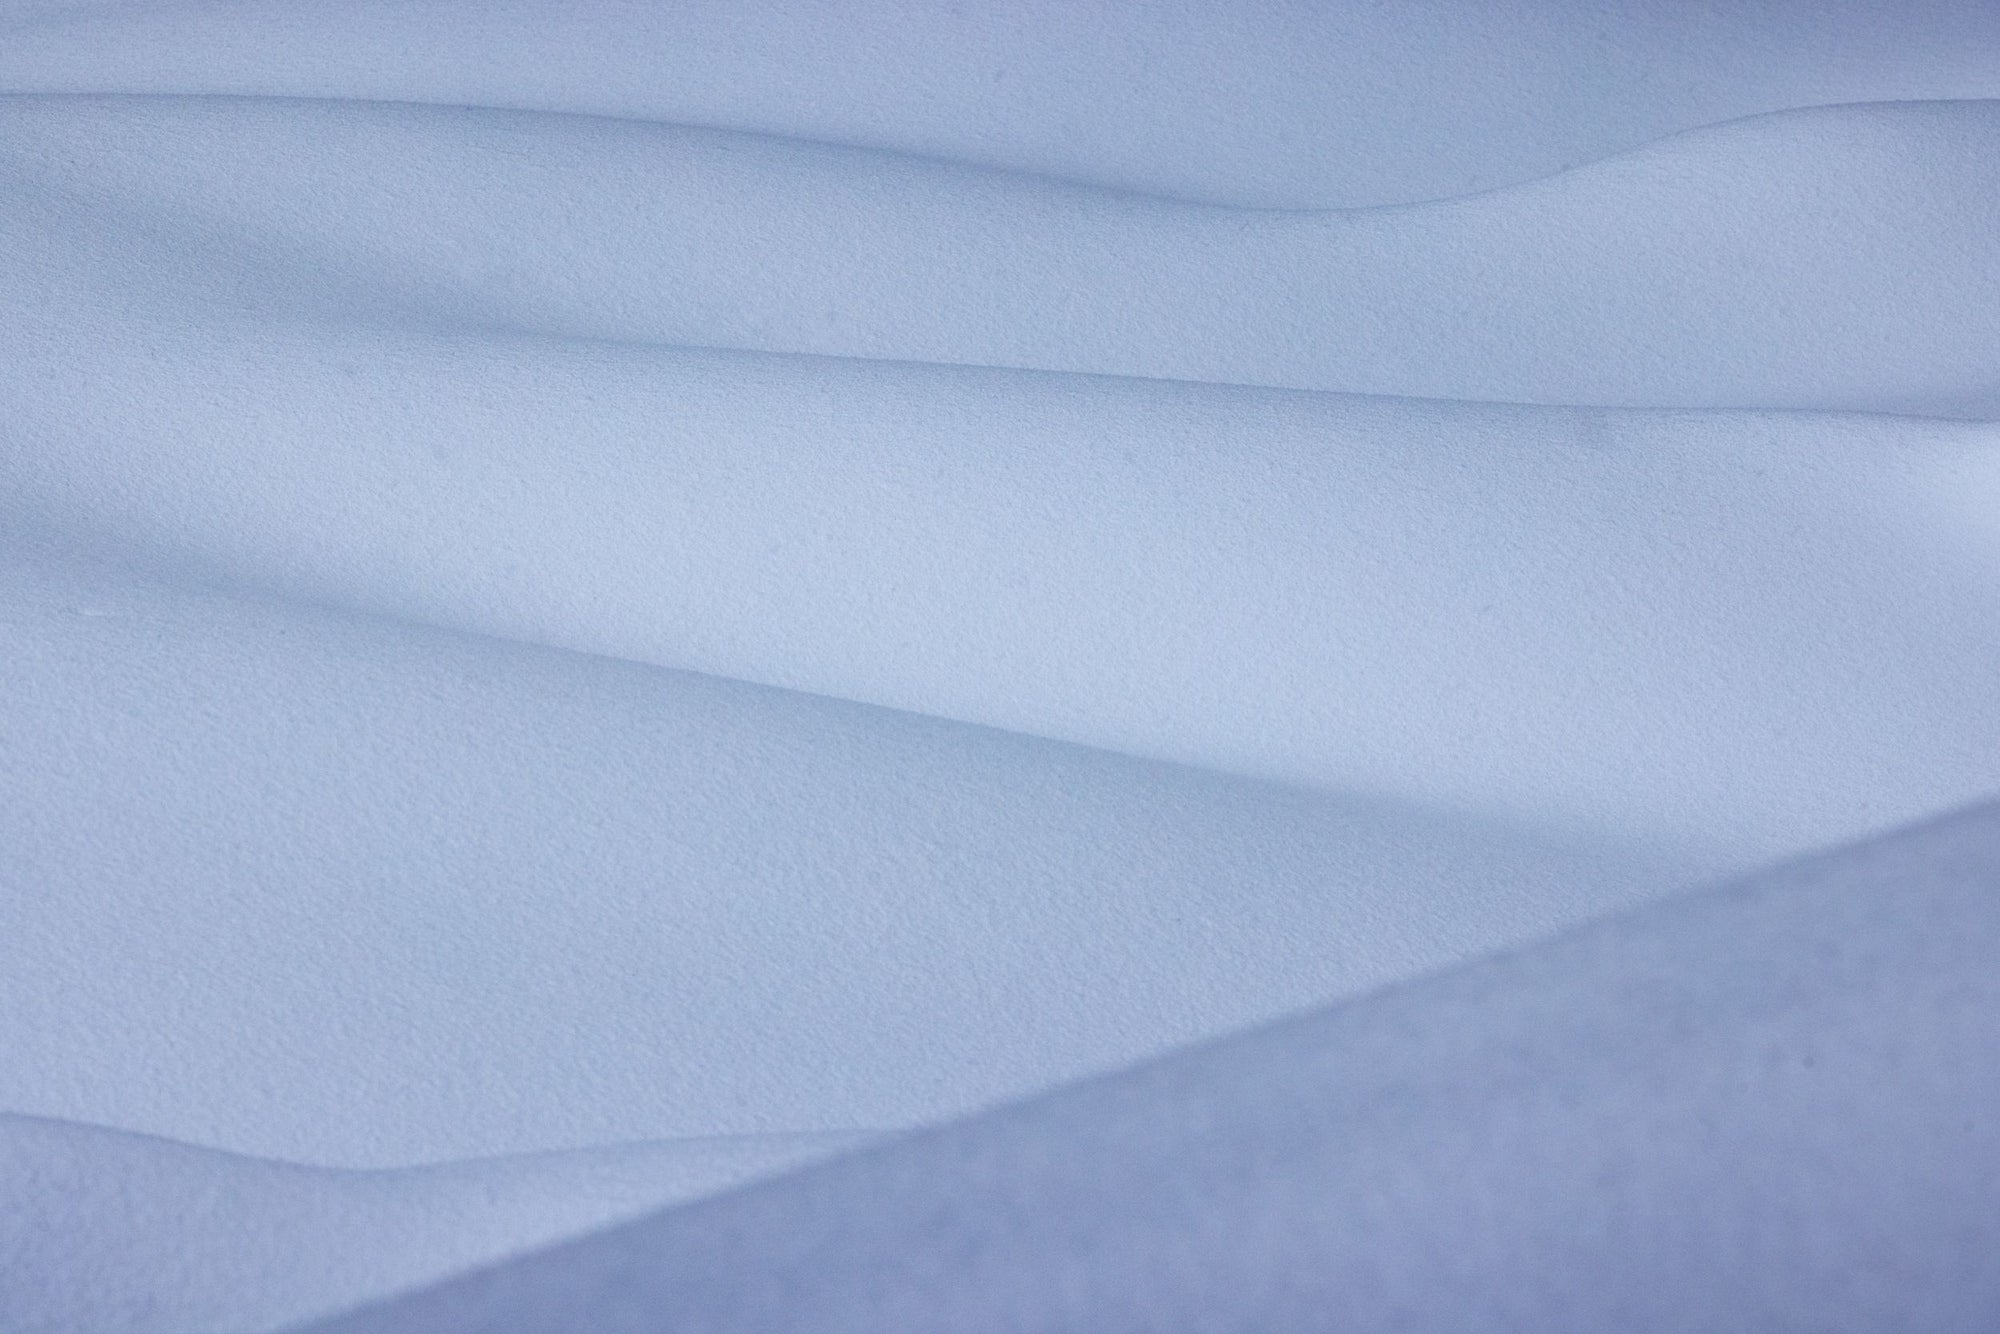 A snowy rolling landscape.